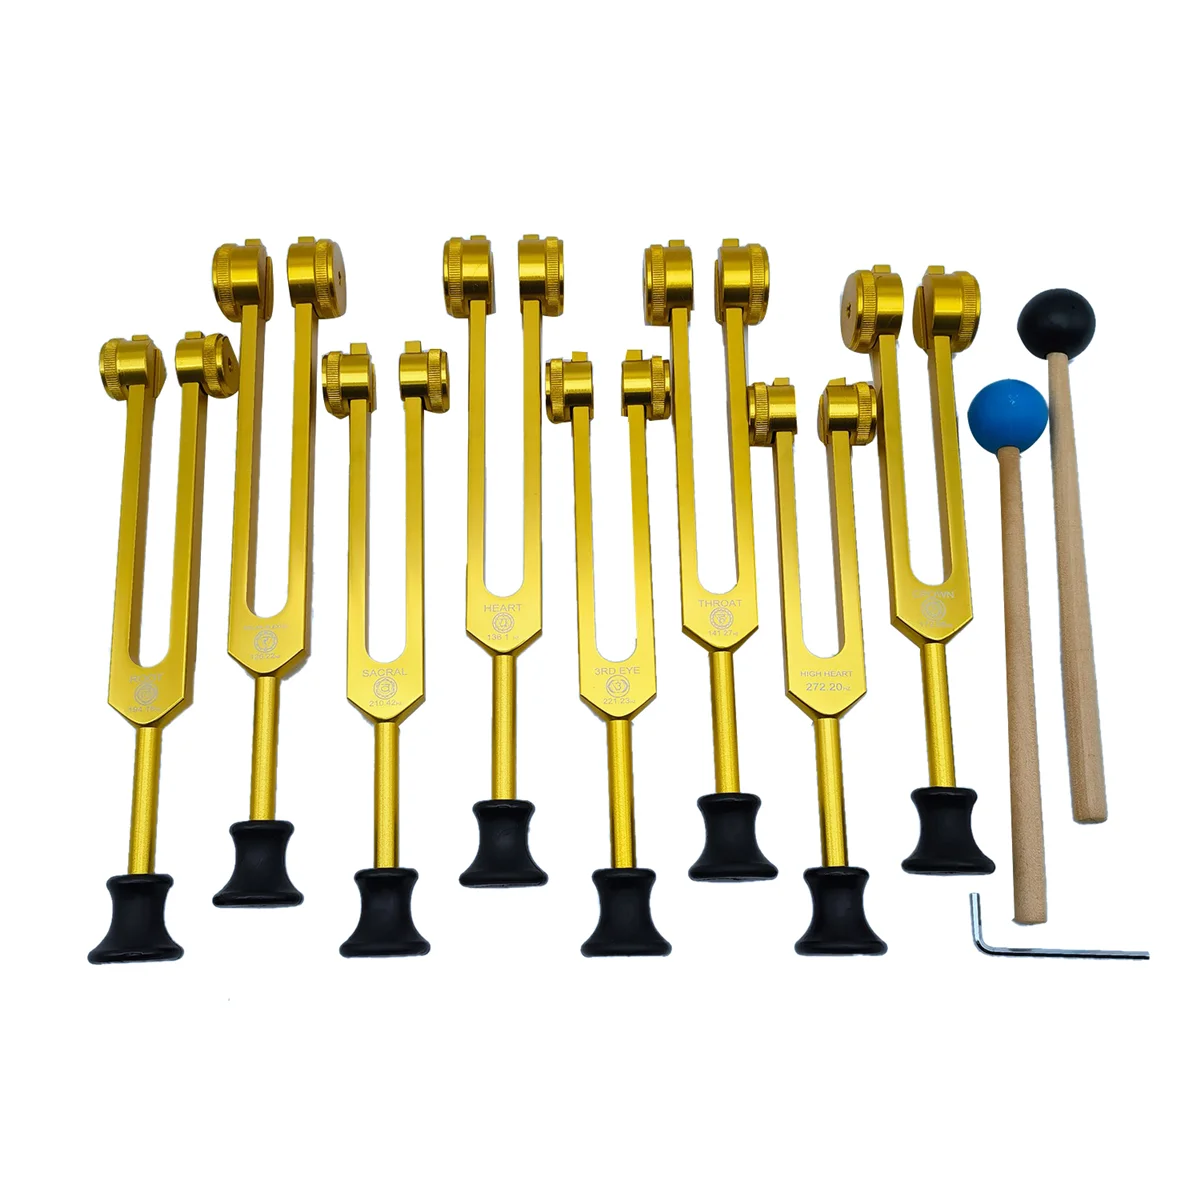 

Tuning Forks Set for Healing,Sound Therapy(126.22 Hz,136.1 Hz,141.27 Hz,172.06 Hz,194.18 Hz,210.42 Hz,221.23Hz) Gold